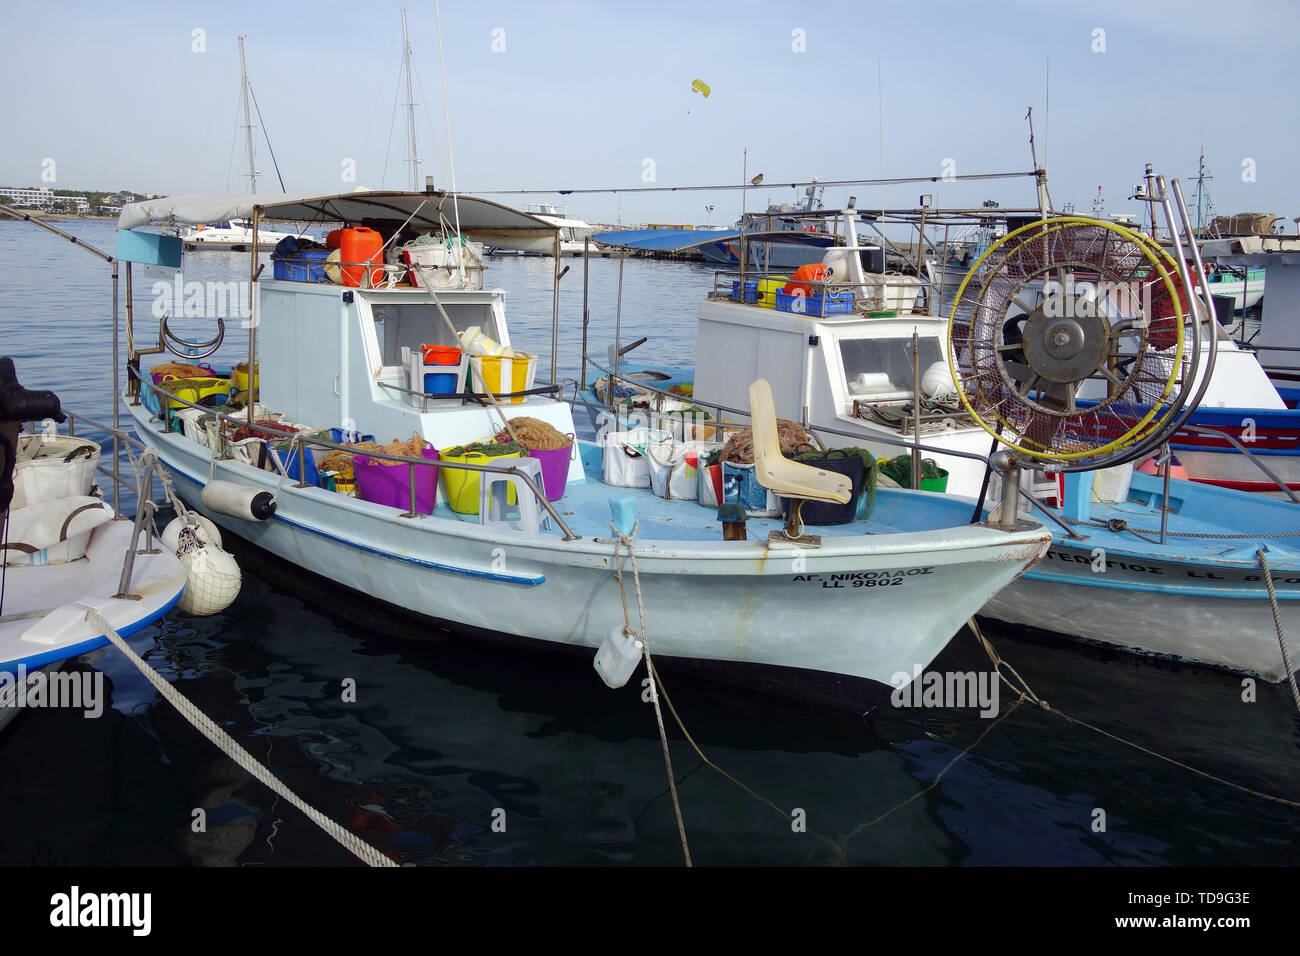 Bateaux de pêche dans le port, Paphos, Chypre, Europe Banque D'Images